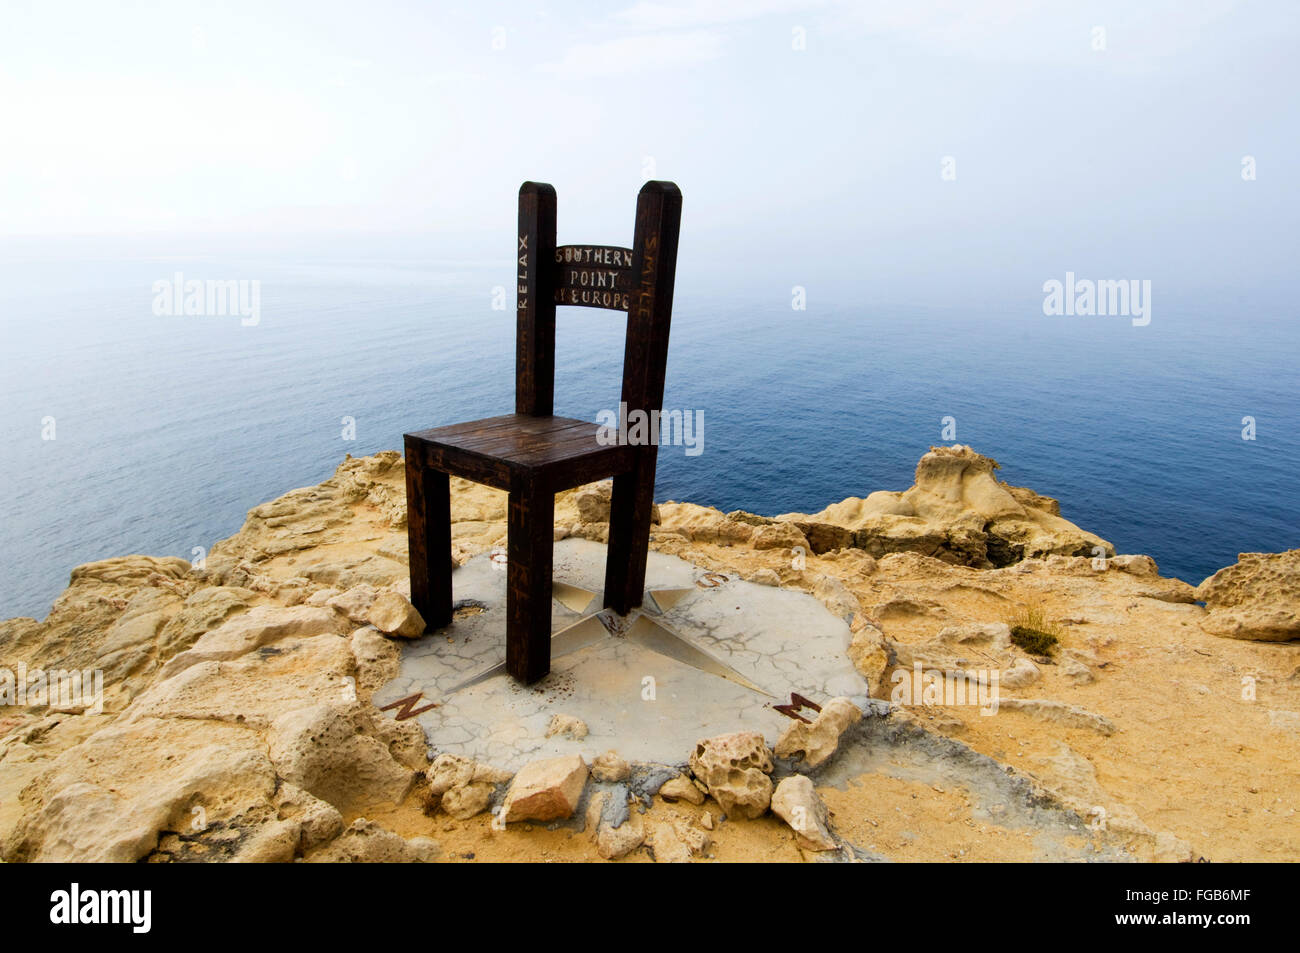 Spanien, Kreta, île de Gavdos, ein Kunstwerk, ein riesiger Stuhl, steht am Kap Tripiti, dem südlichsten Punkt Europas. Banque D'Images